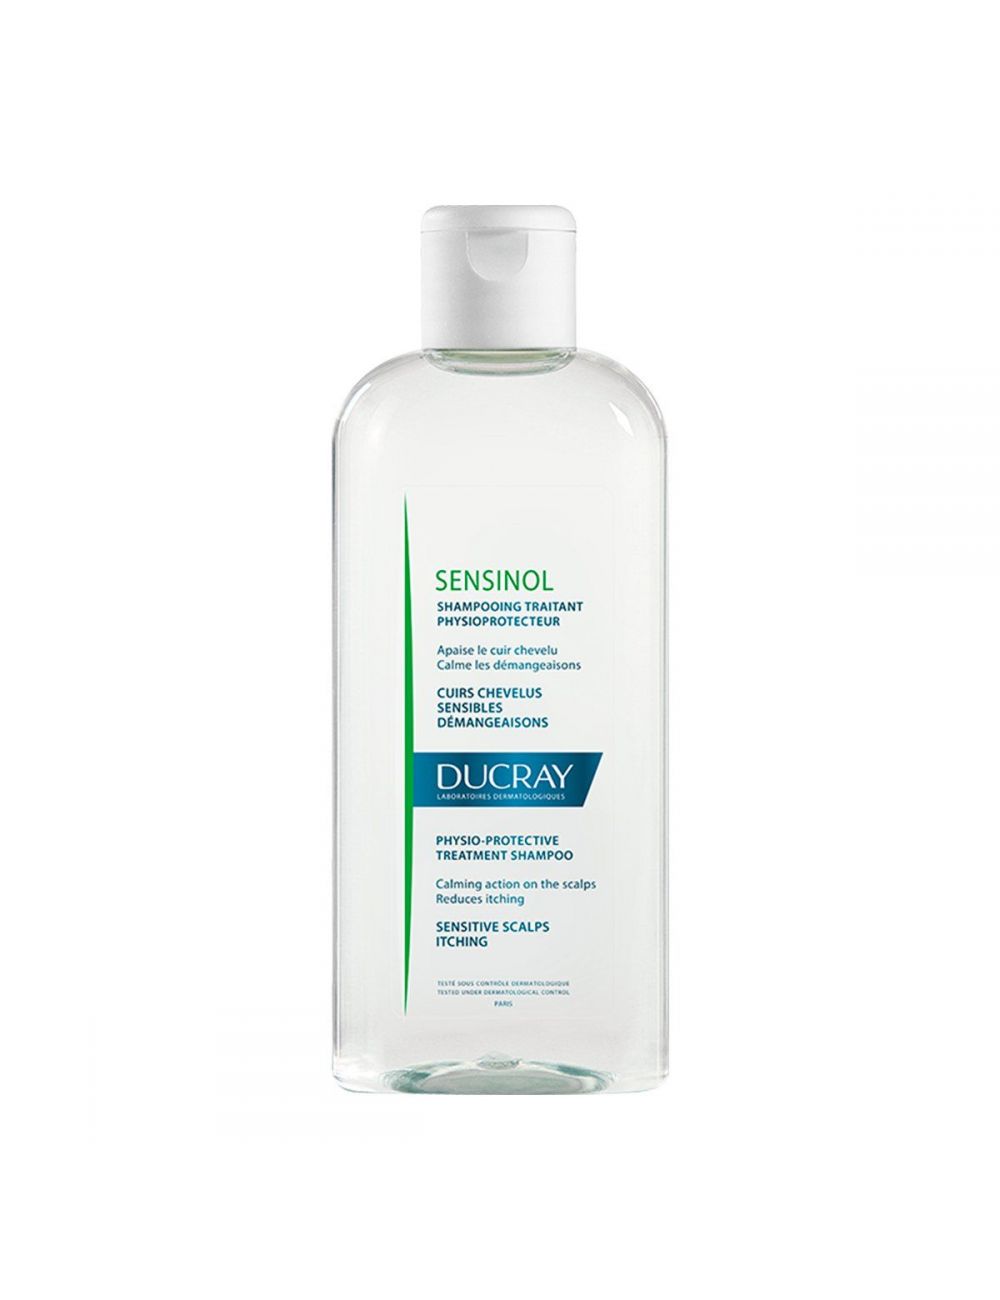 Ducray Sensinol Shampoo Fisioprotectos Caja Con Frasco de 200 mL